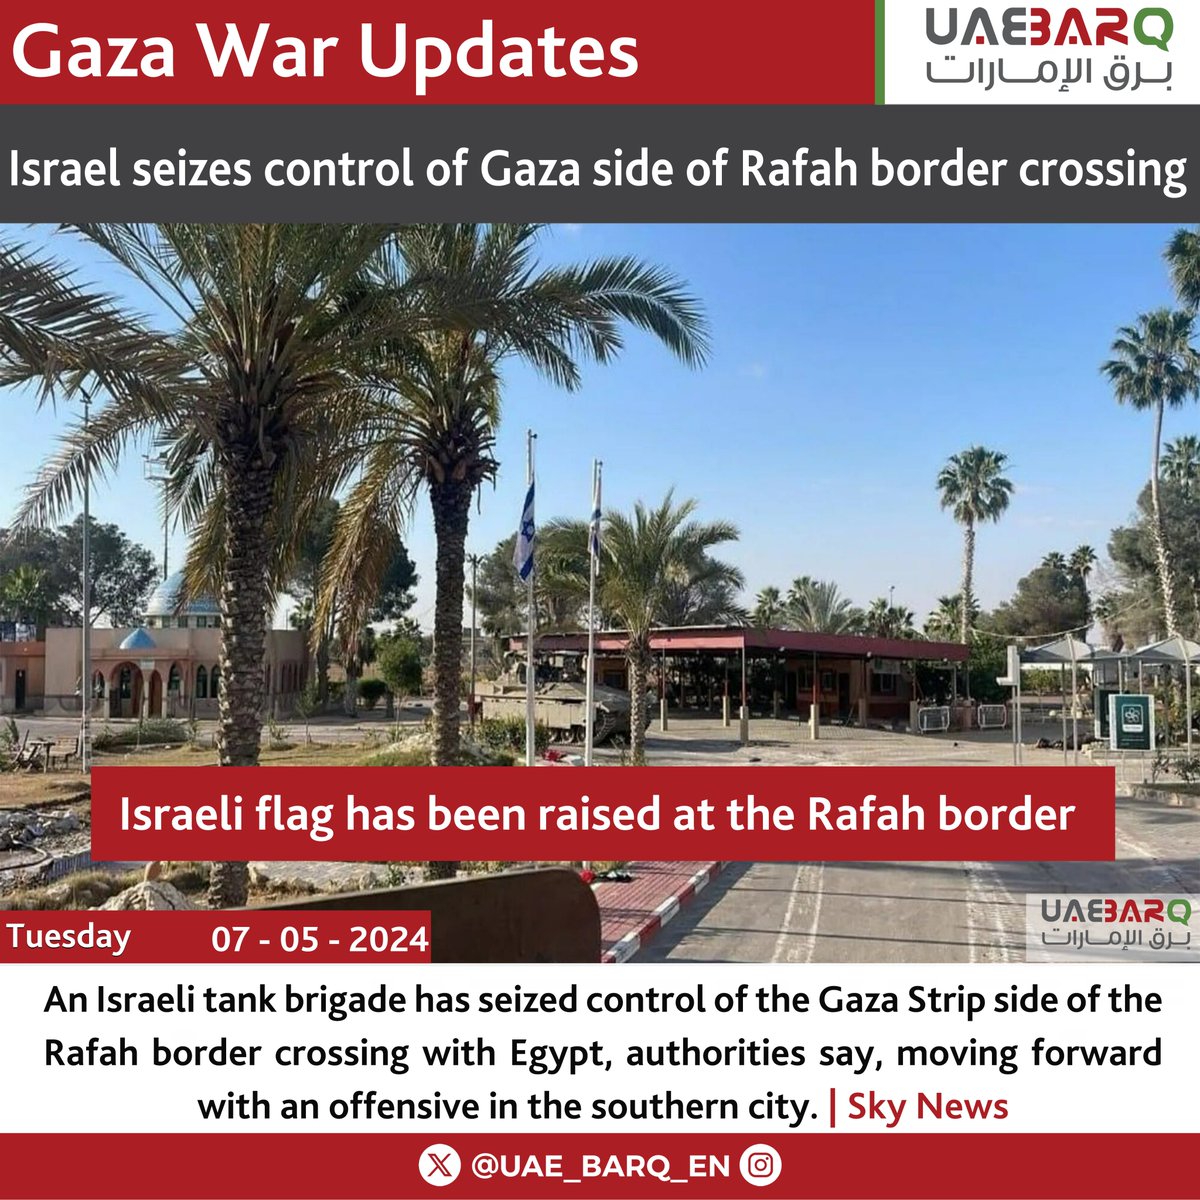 #Israel seizes control of #Gaza side of #Rafah border crossing. #UAE_BARQ_EN